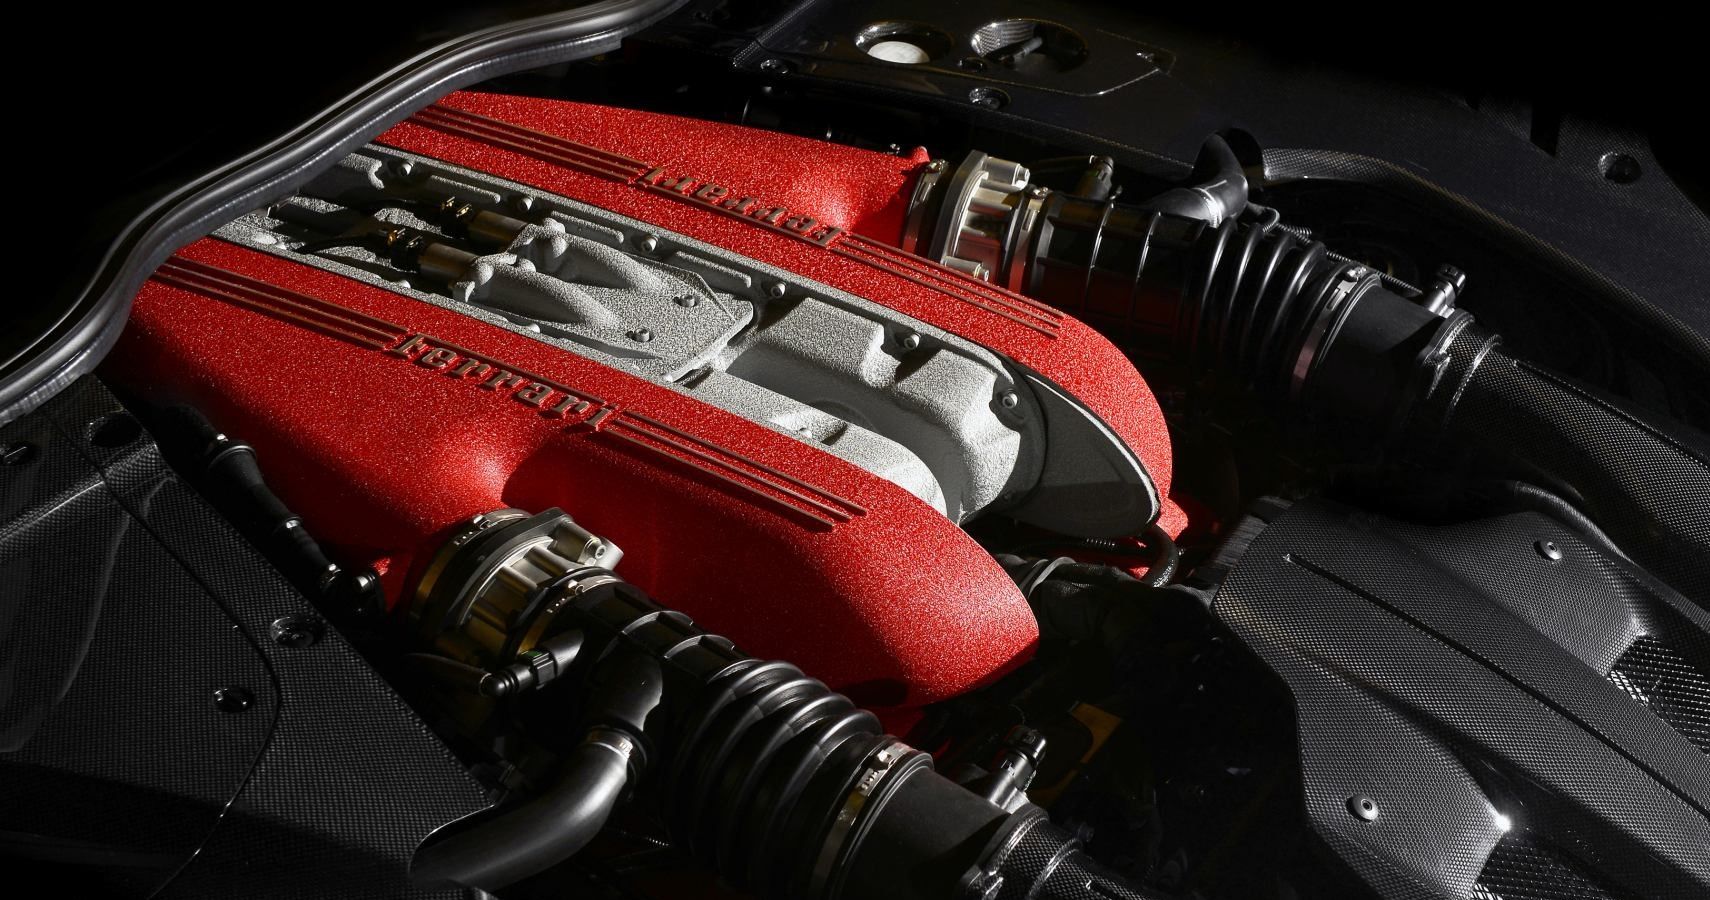 Ferrari F12tdf engine bay view